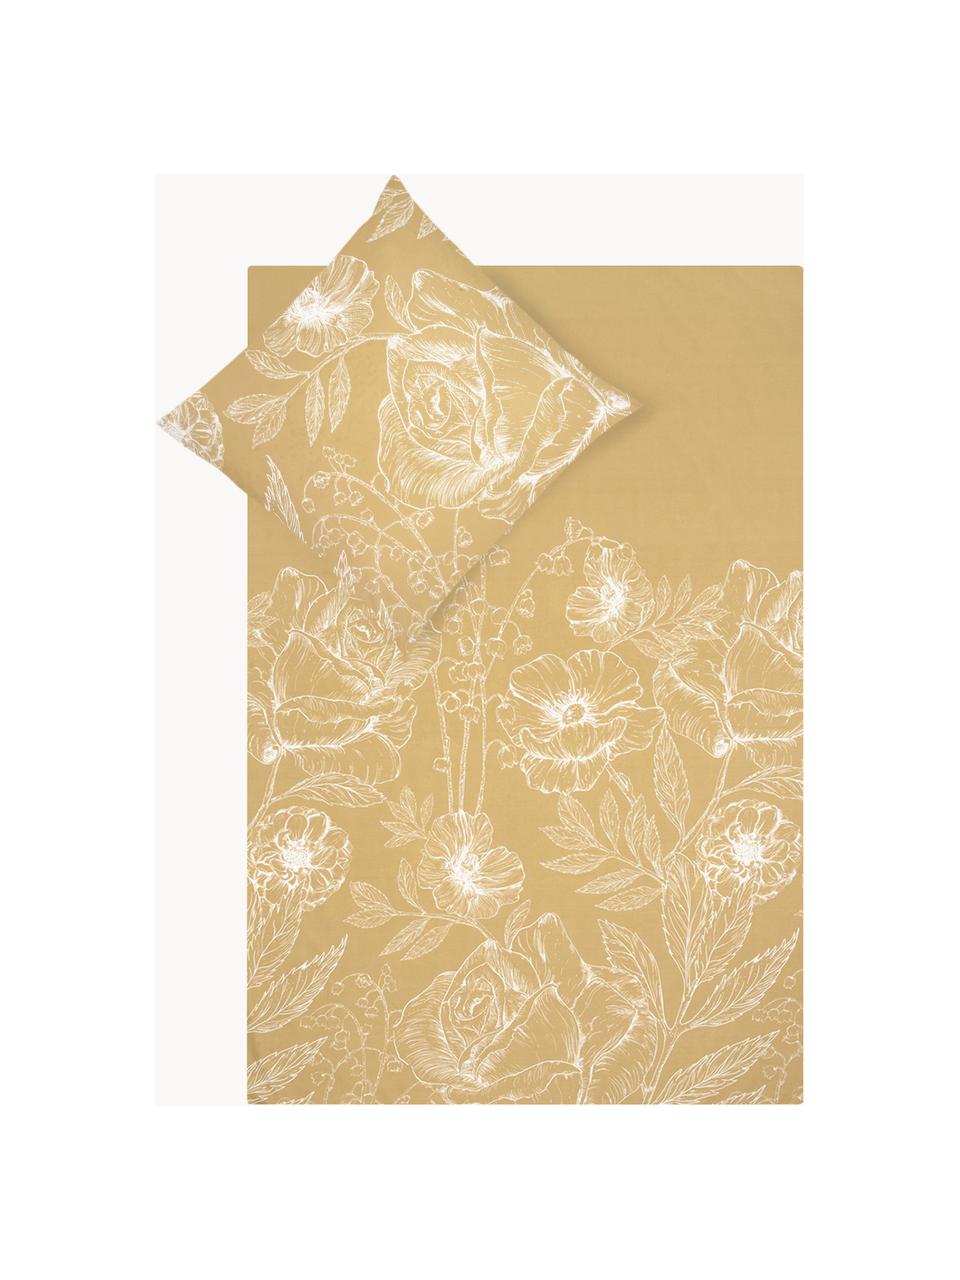 Baumwollperkal-Bettwäsche Keno mit Blumenprint, Webart: Perkal Fadendichte 180 TC, Senfgelb, Weiss, 135 x 200 cm + 1 Kissen 80 x 80 cm